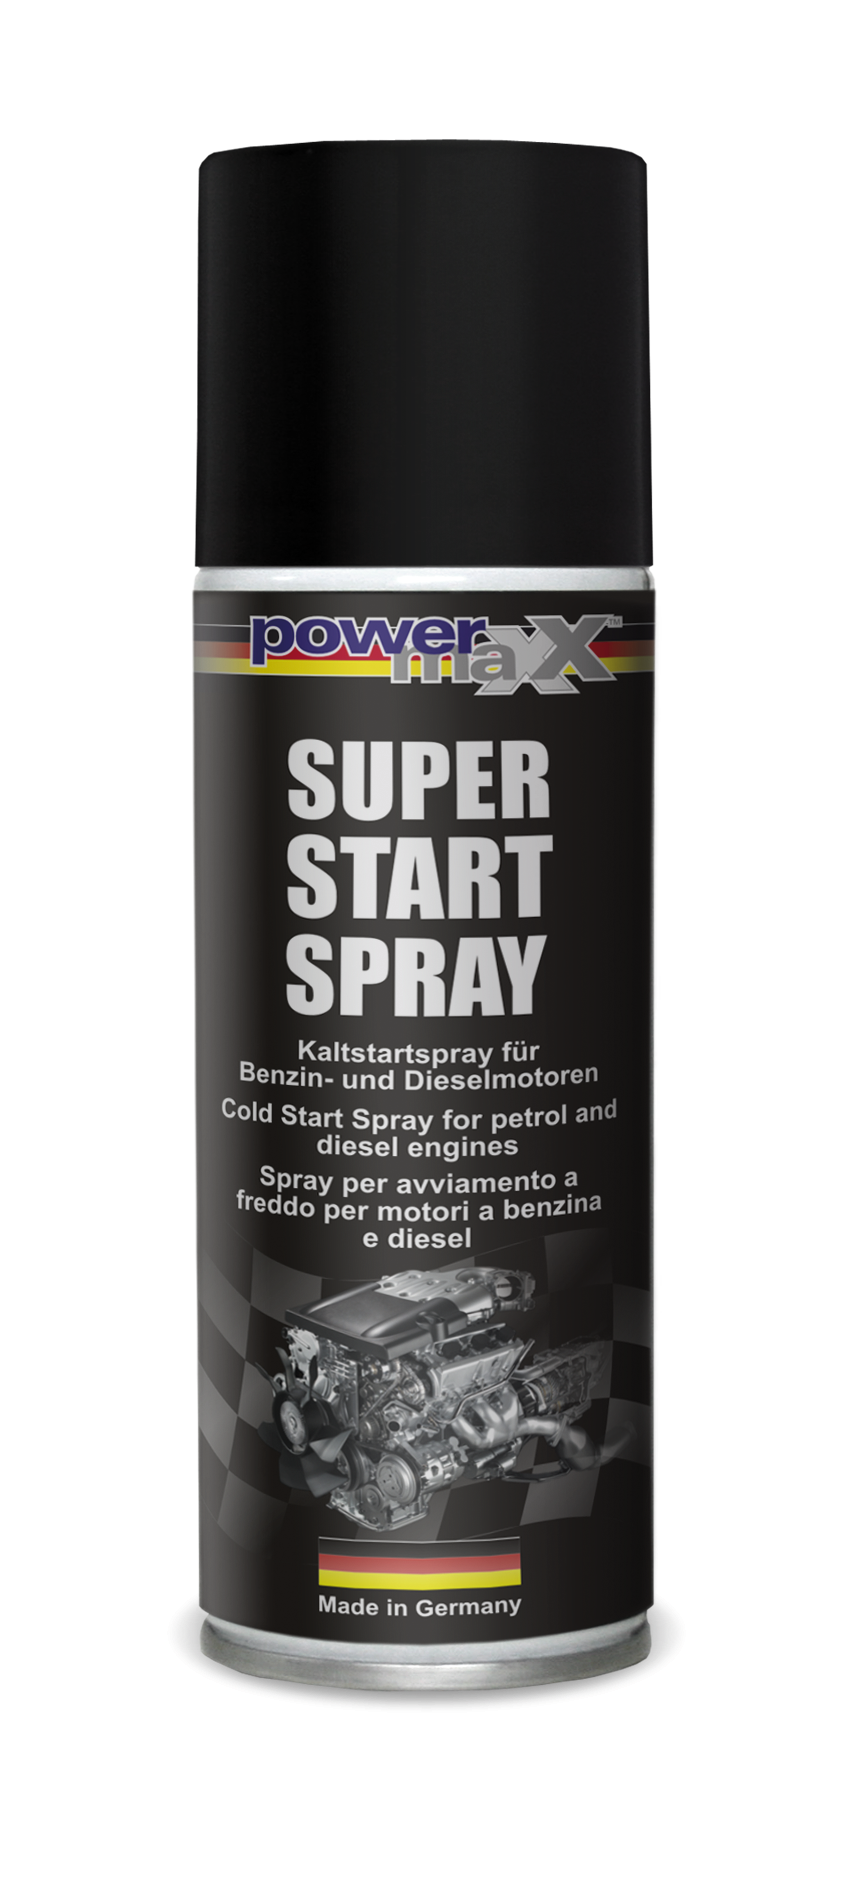 Starthilfespray für Benzinmotoren und Dieselmotoren Kaltstartspray  Startspray kaufen bei